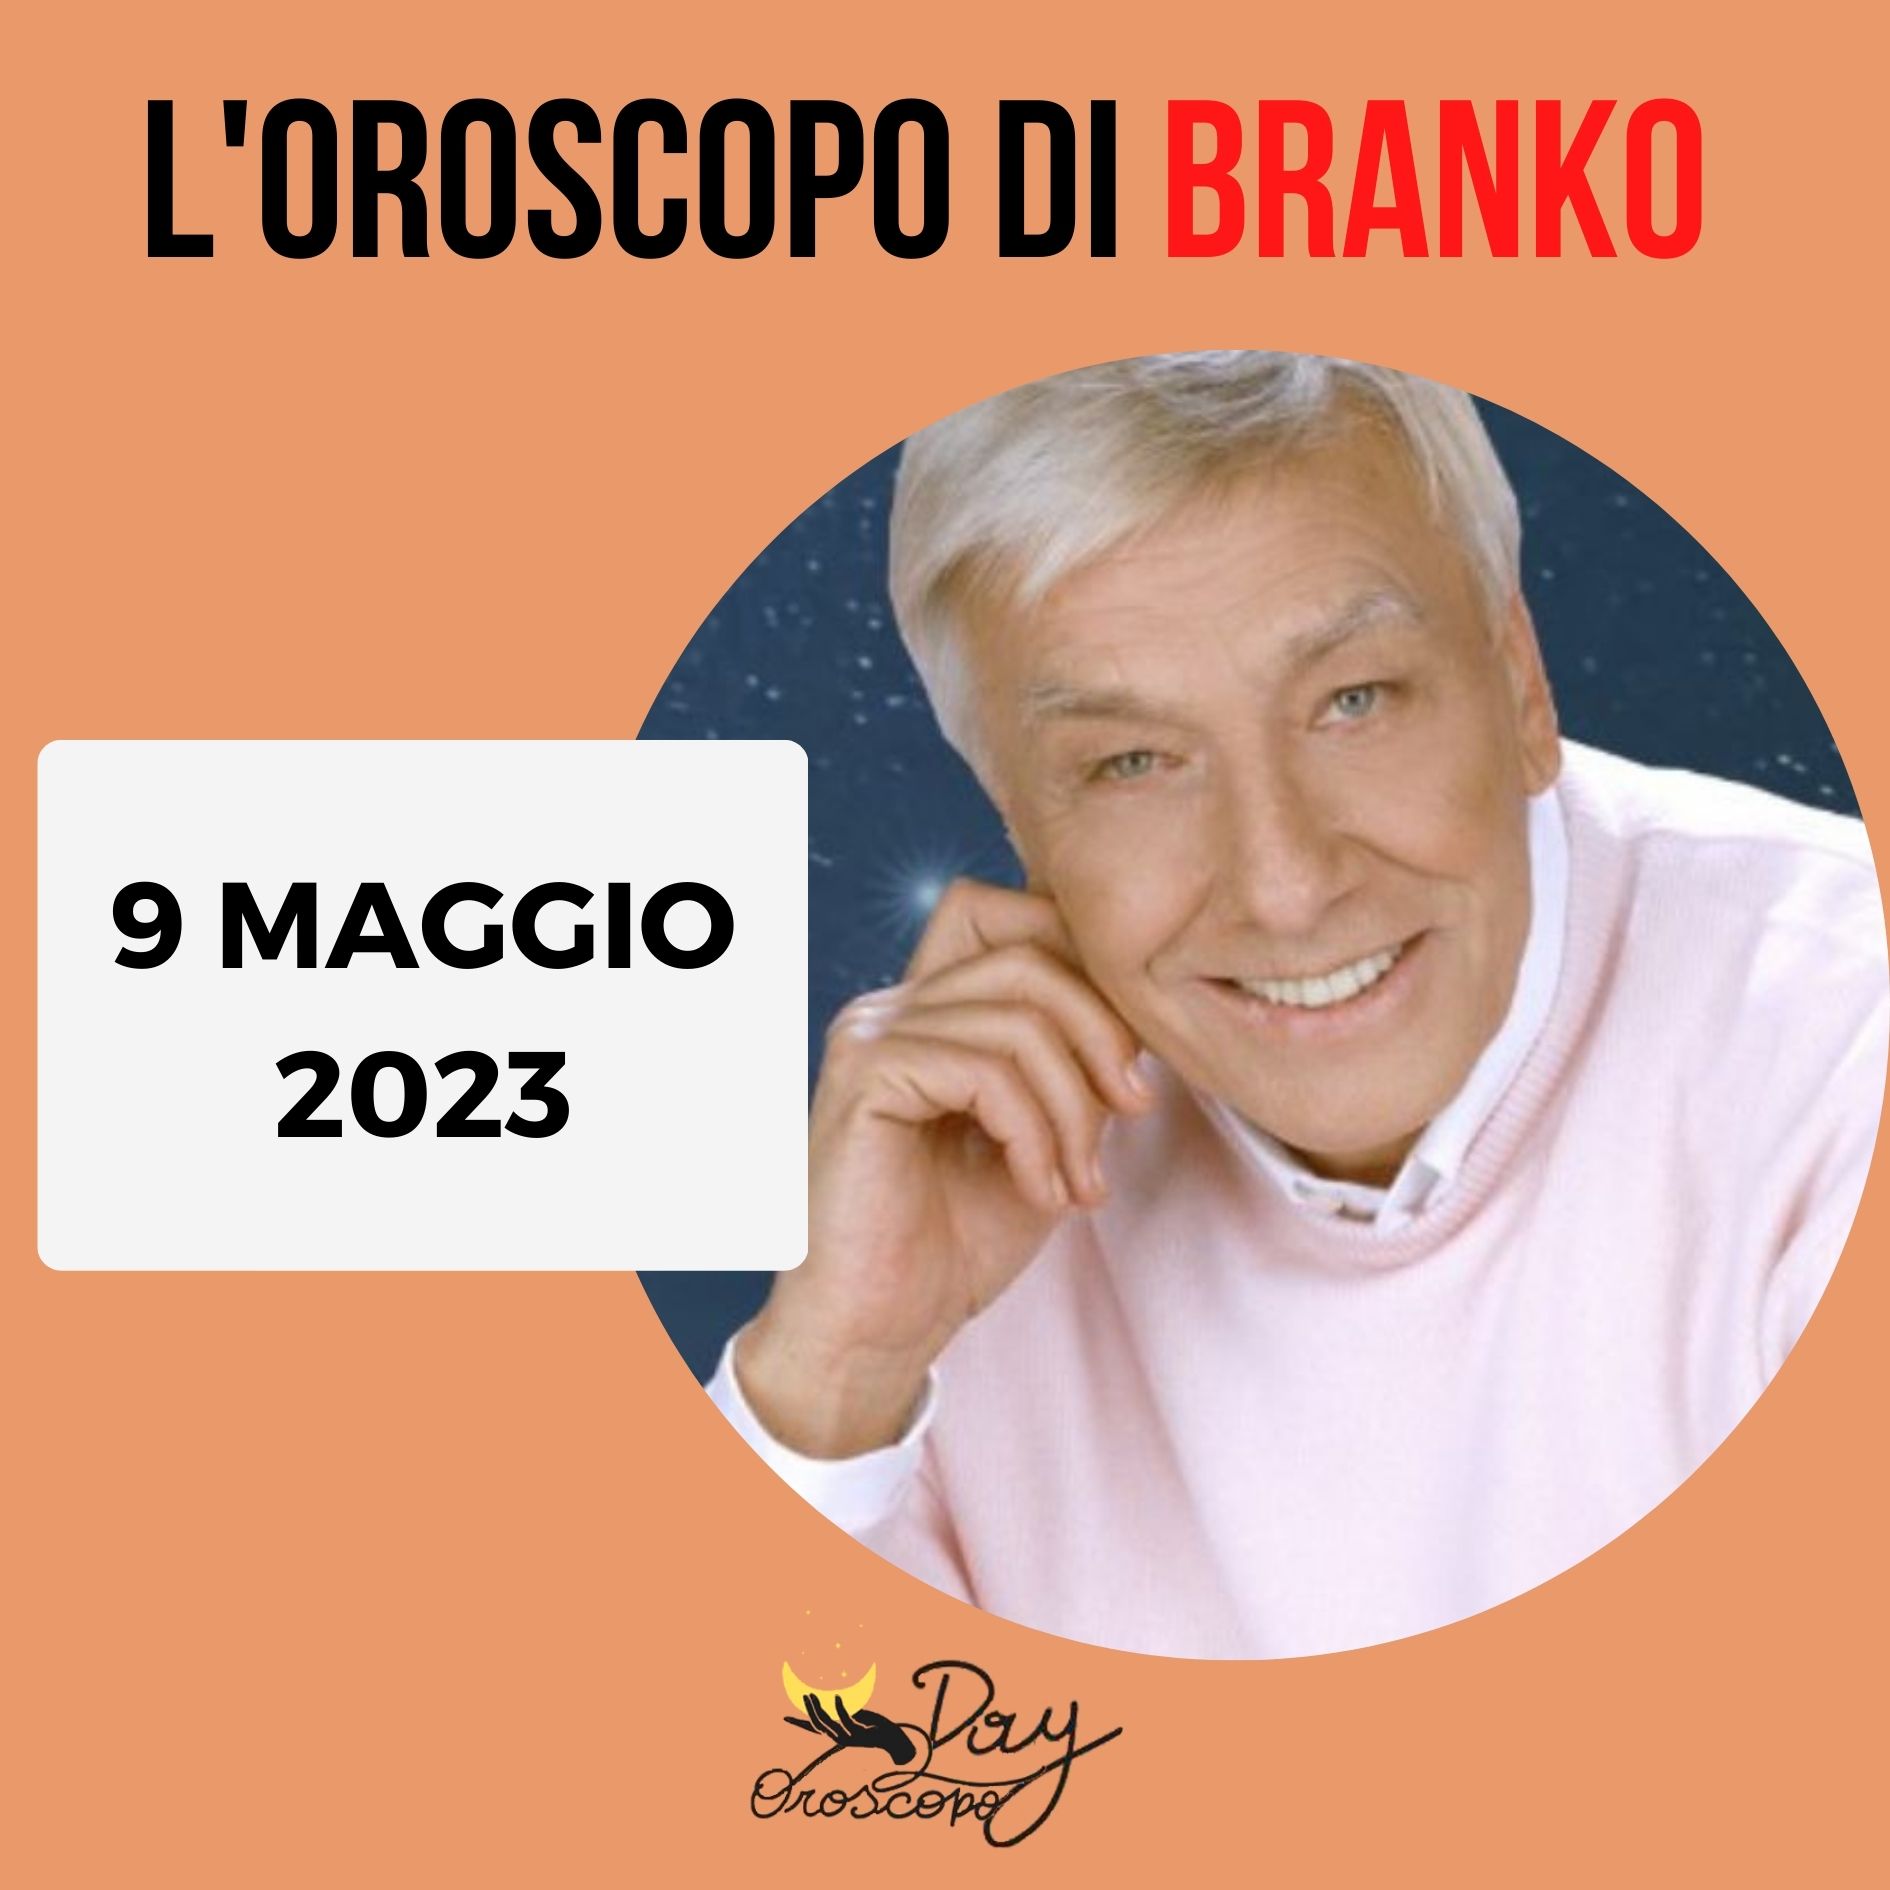 Oroscopo oggi domani Branko 9 maggio 2023